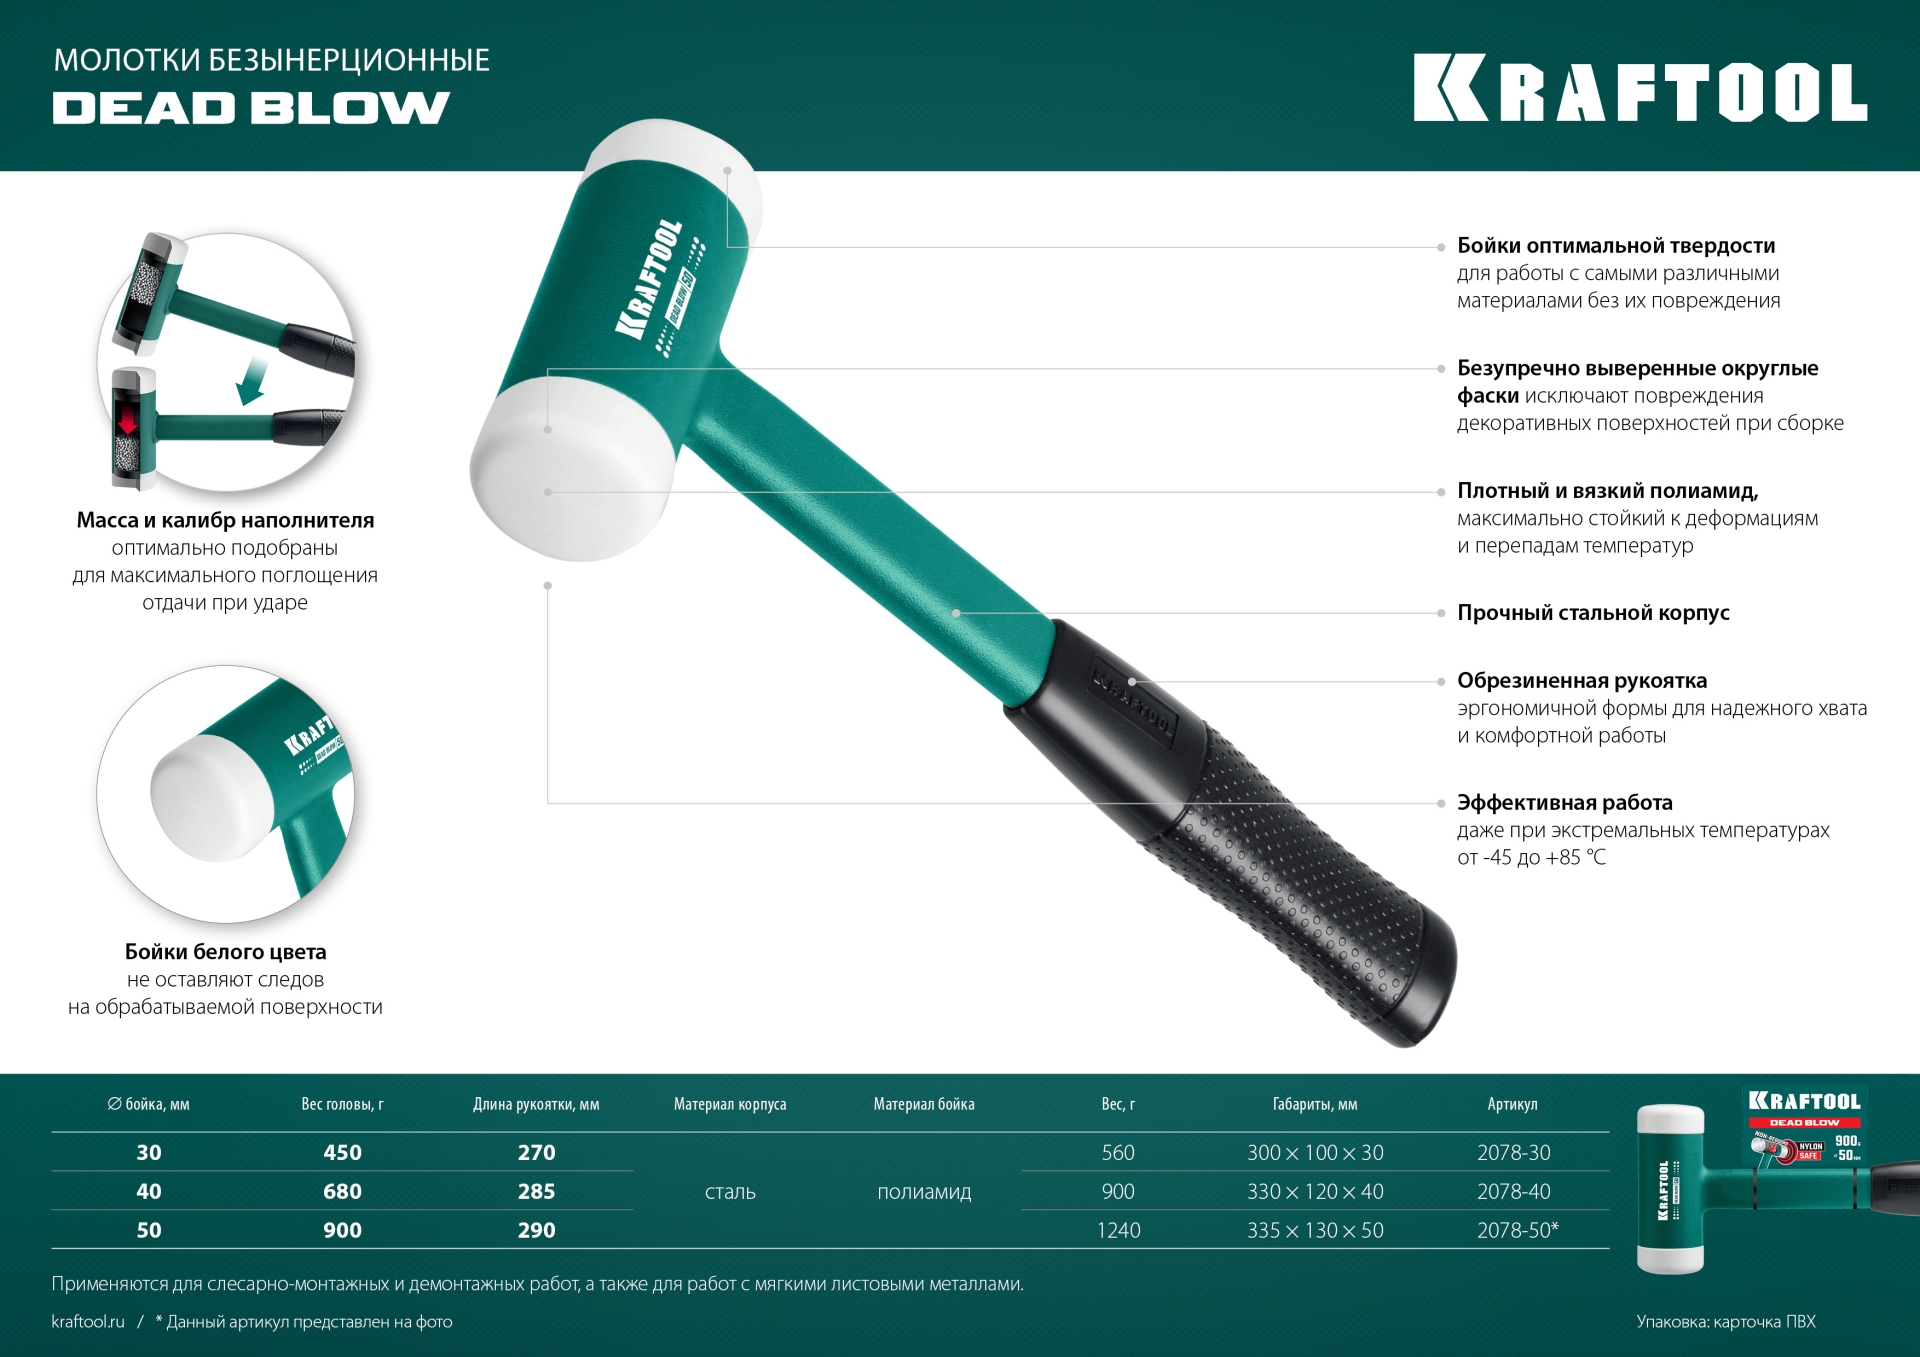 KRAFTOOL Dead Blow, 30 мм, 450 г, безынерционный молоток (2078-40)